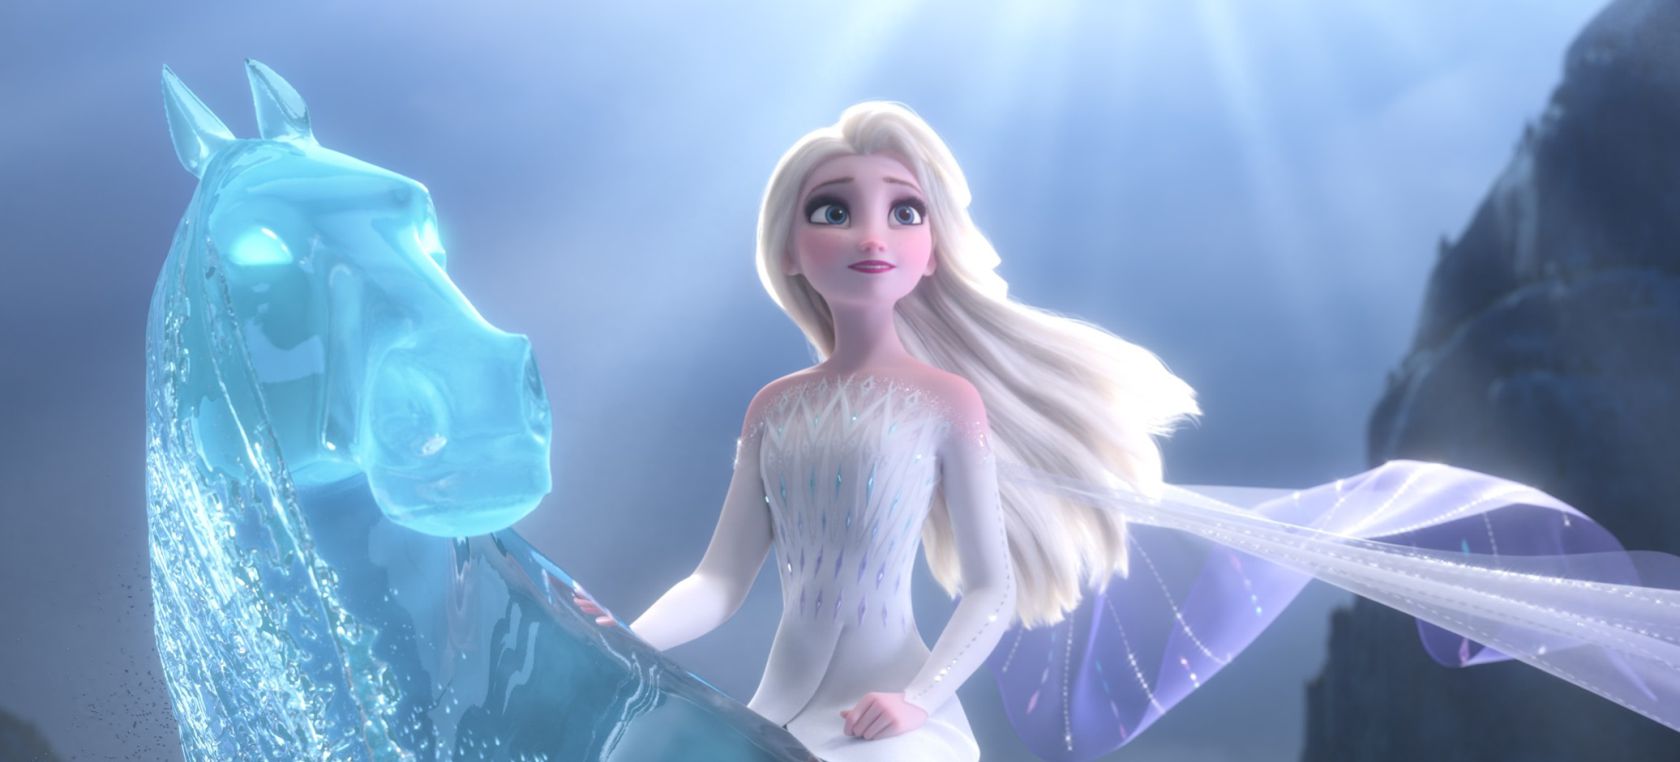 La teoría viral sobre 'Frozen 2': Elsa está muerta al final de la película  | Cine y Televisión | LOS40